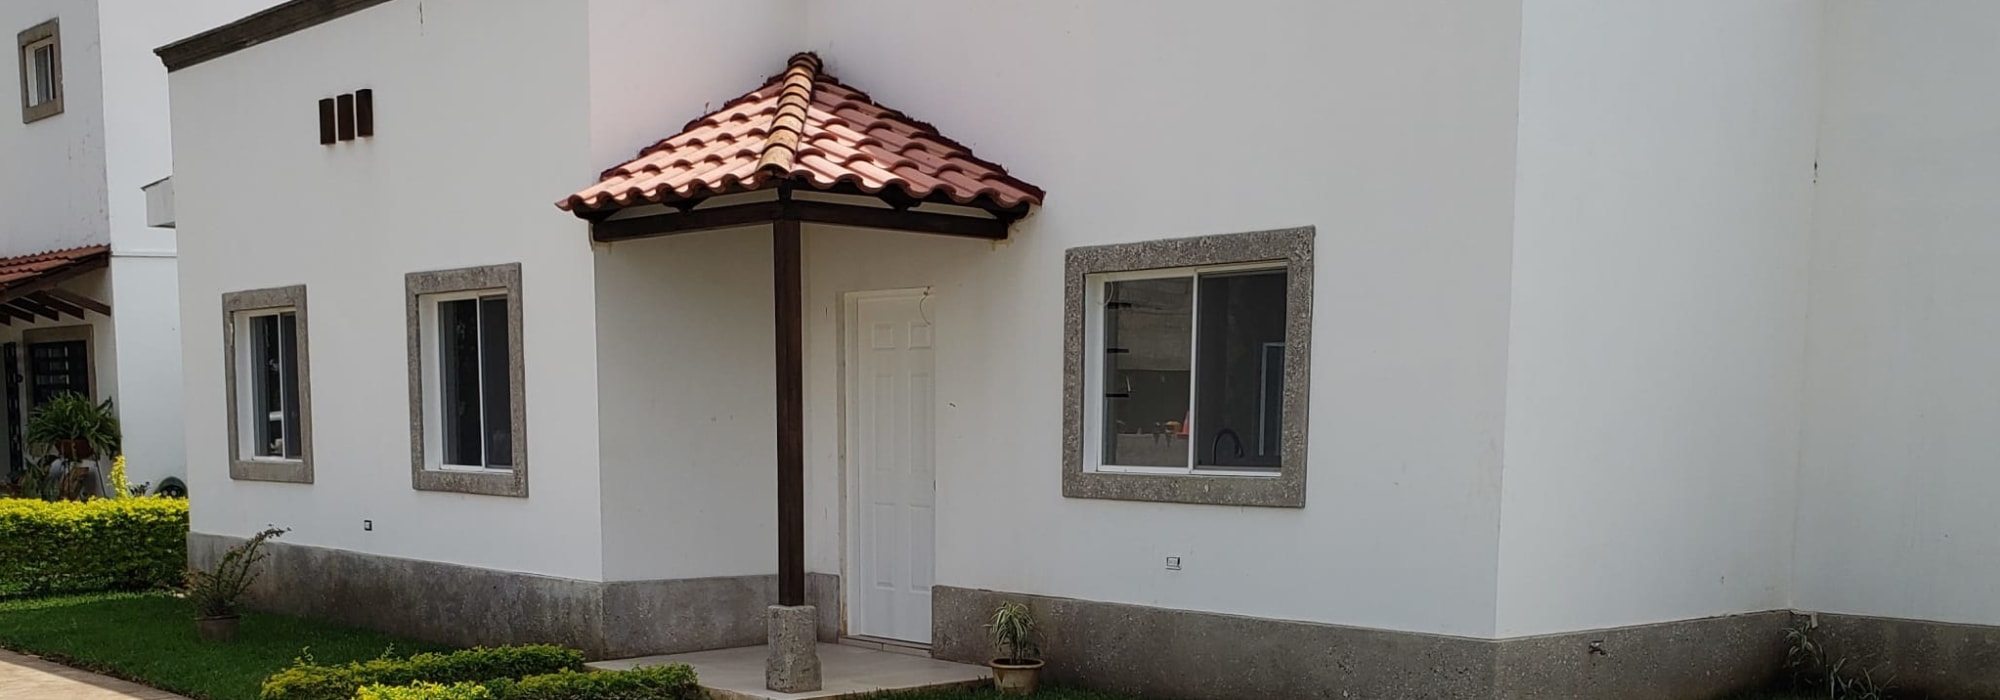 Tu Casa nueva en Jinotepe, Modelo Índigo Ampliado, en Residencial Camino Verde